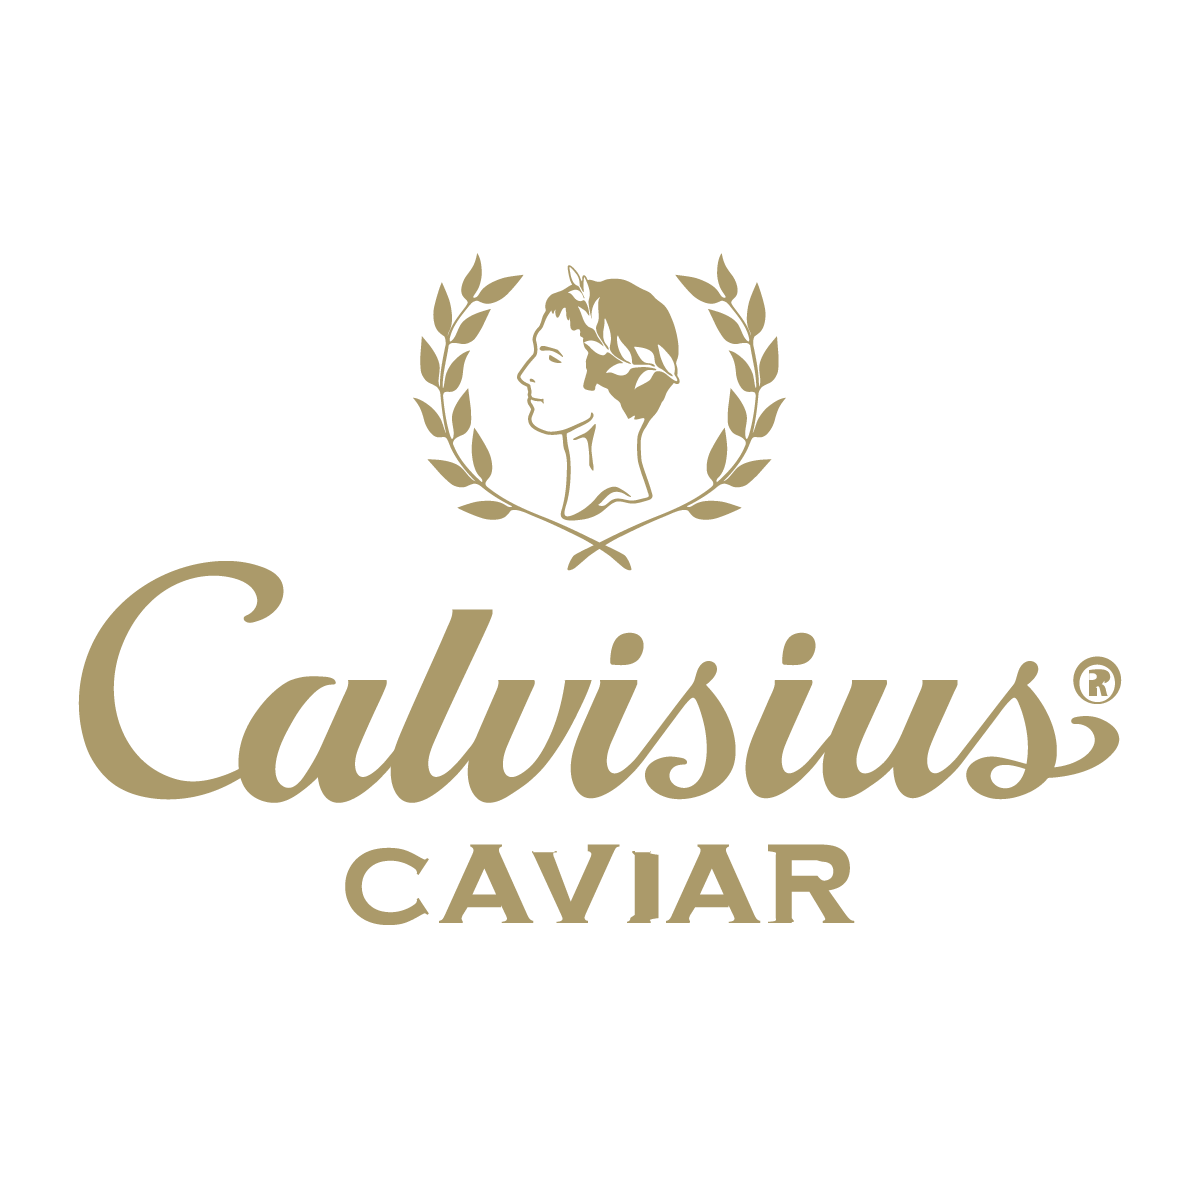 calvisius caviar logo in gold with grey backdrop